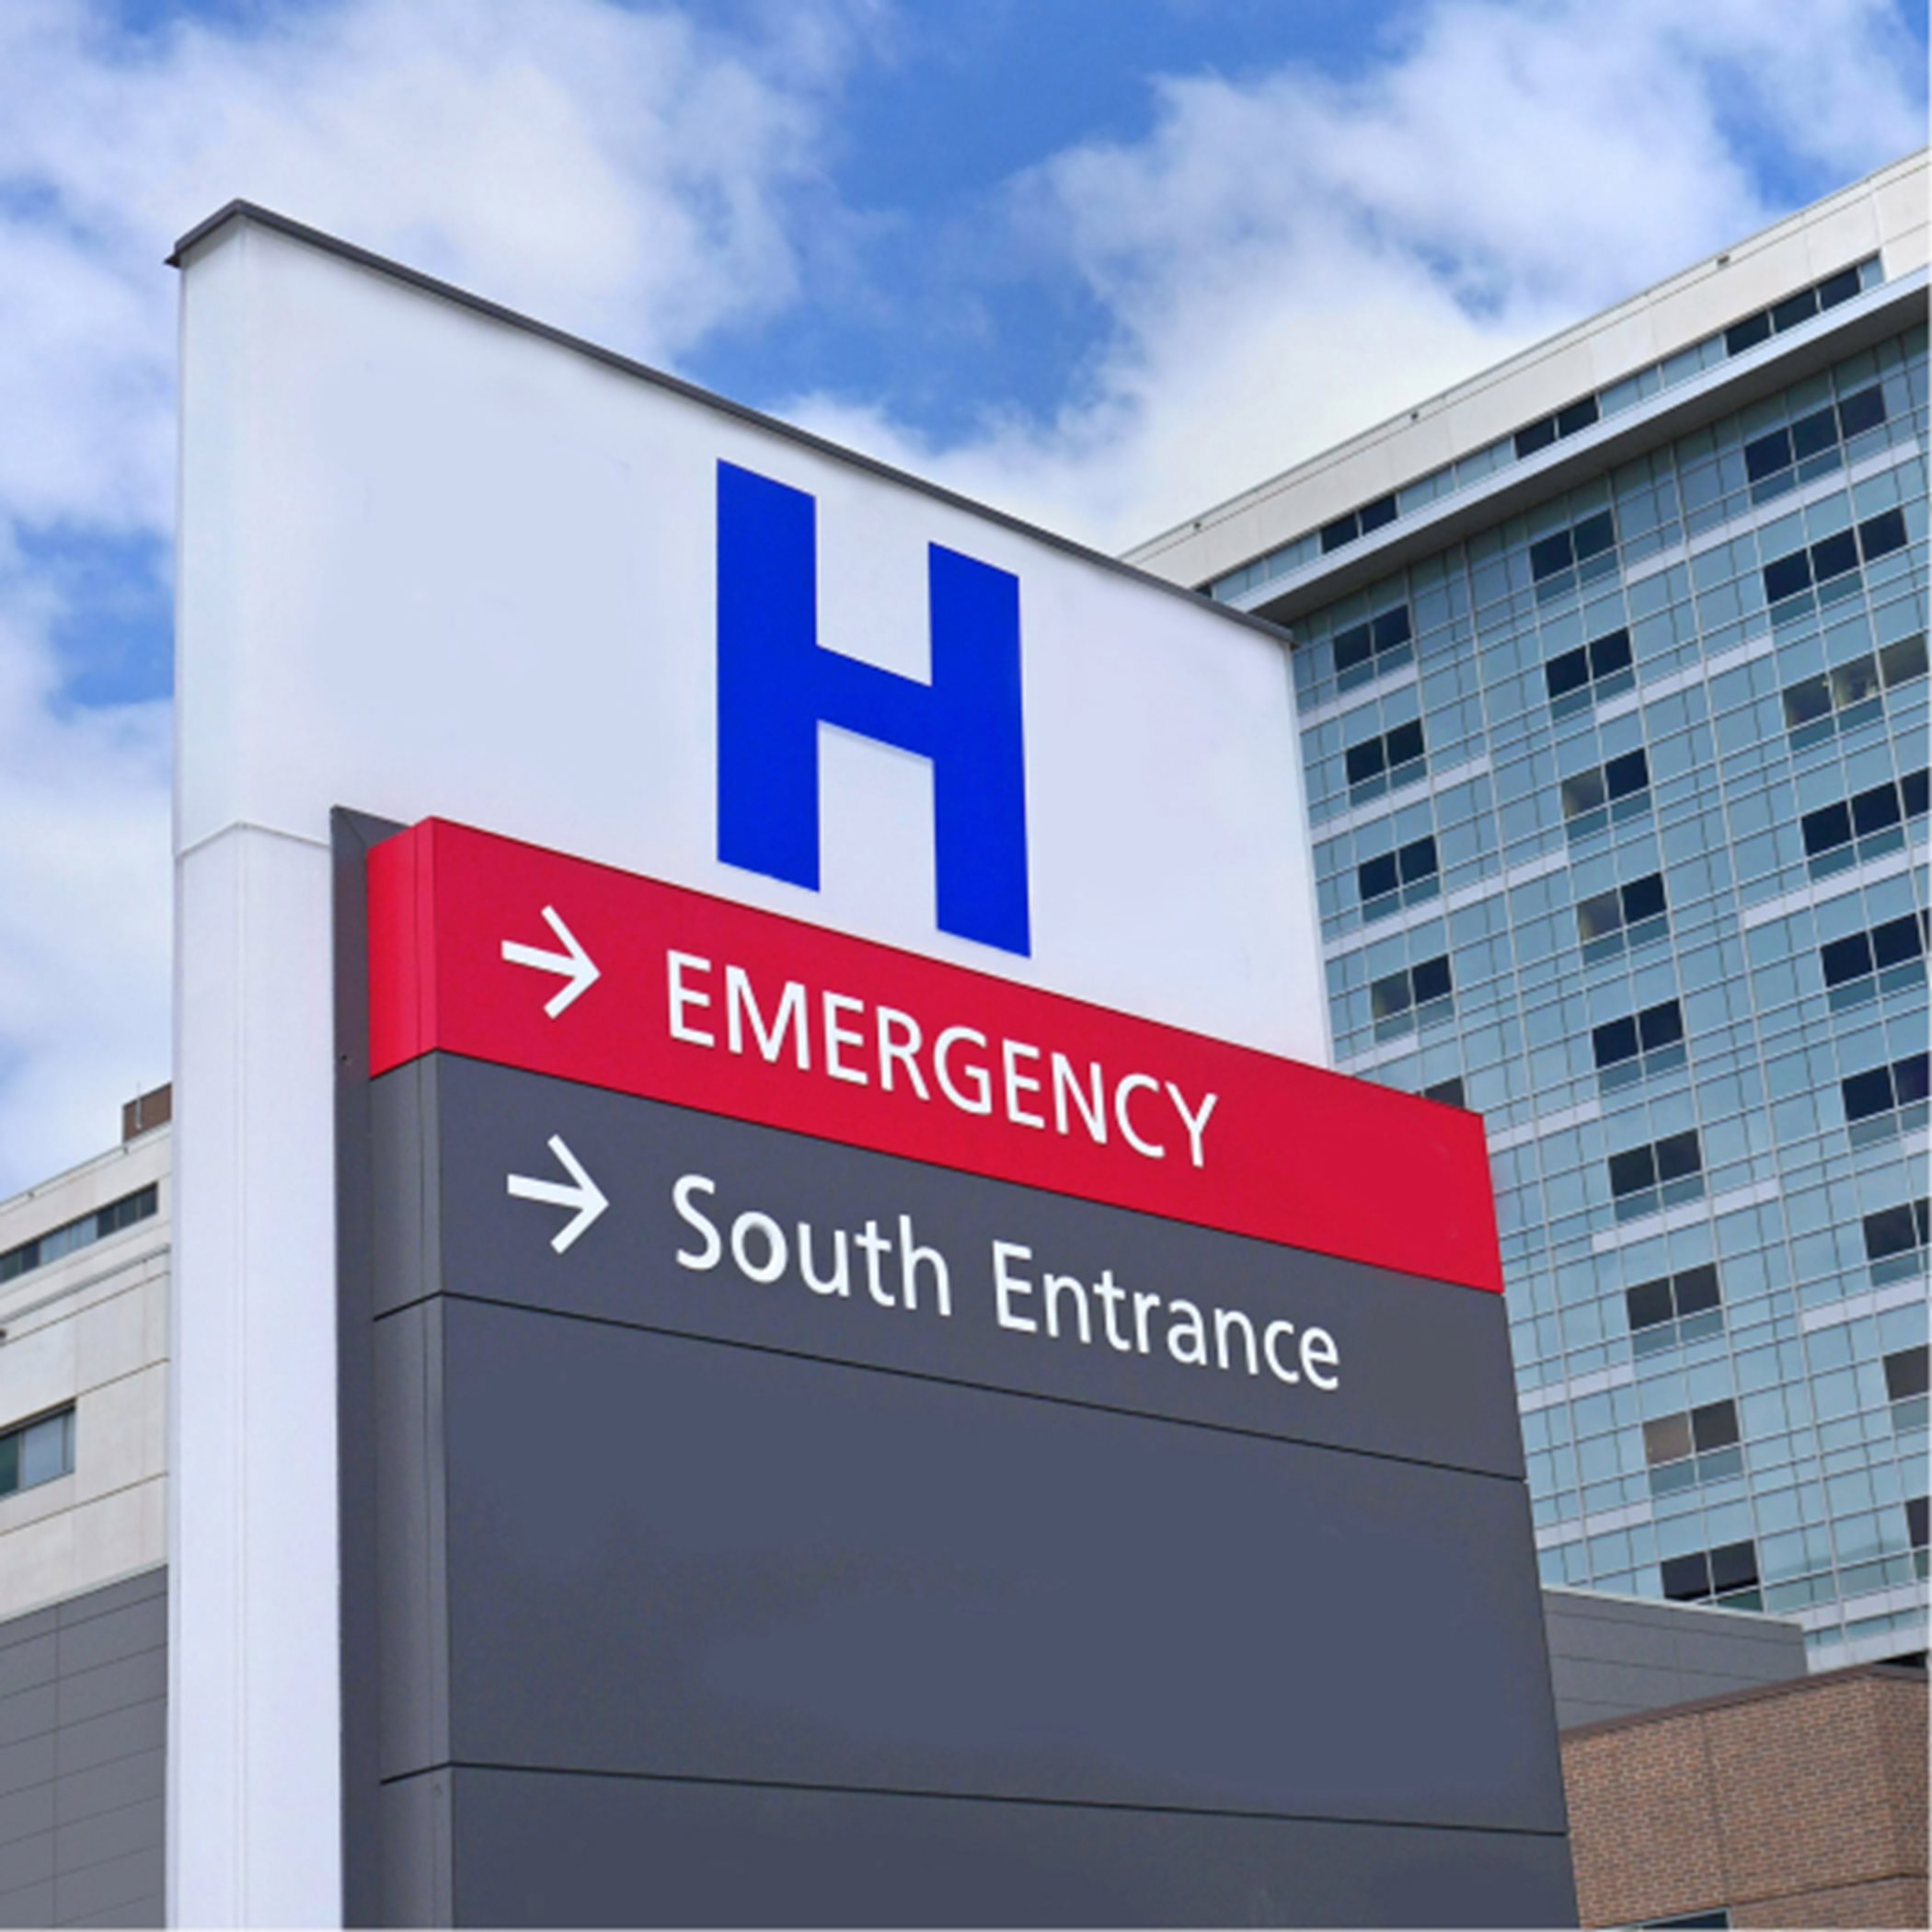 Hospital Entrance Sign